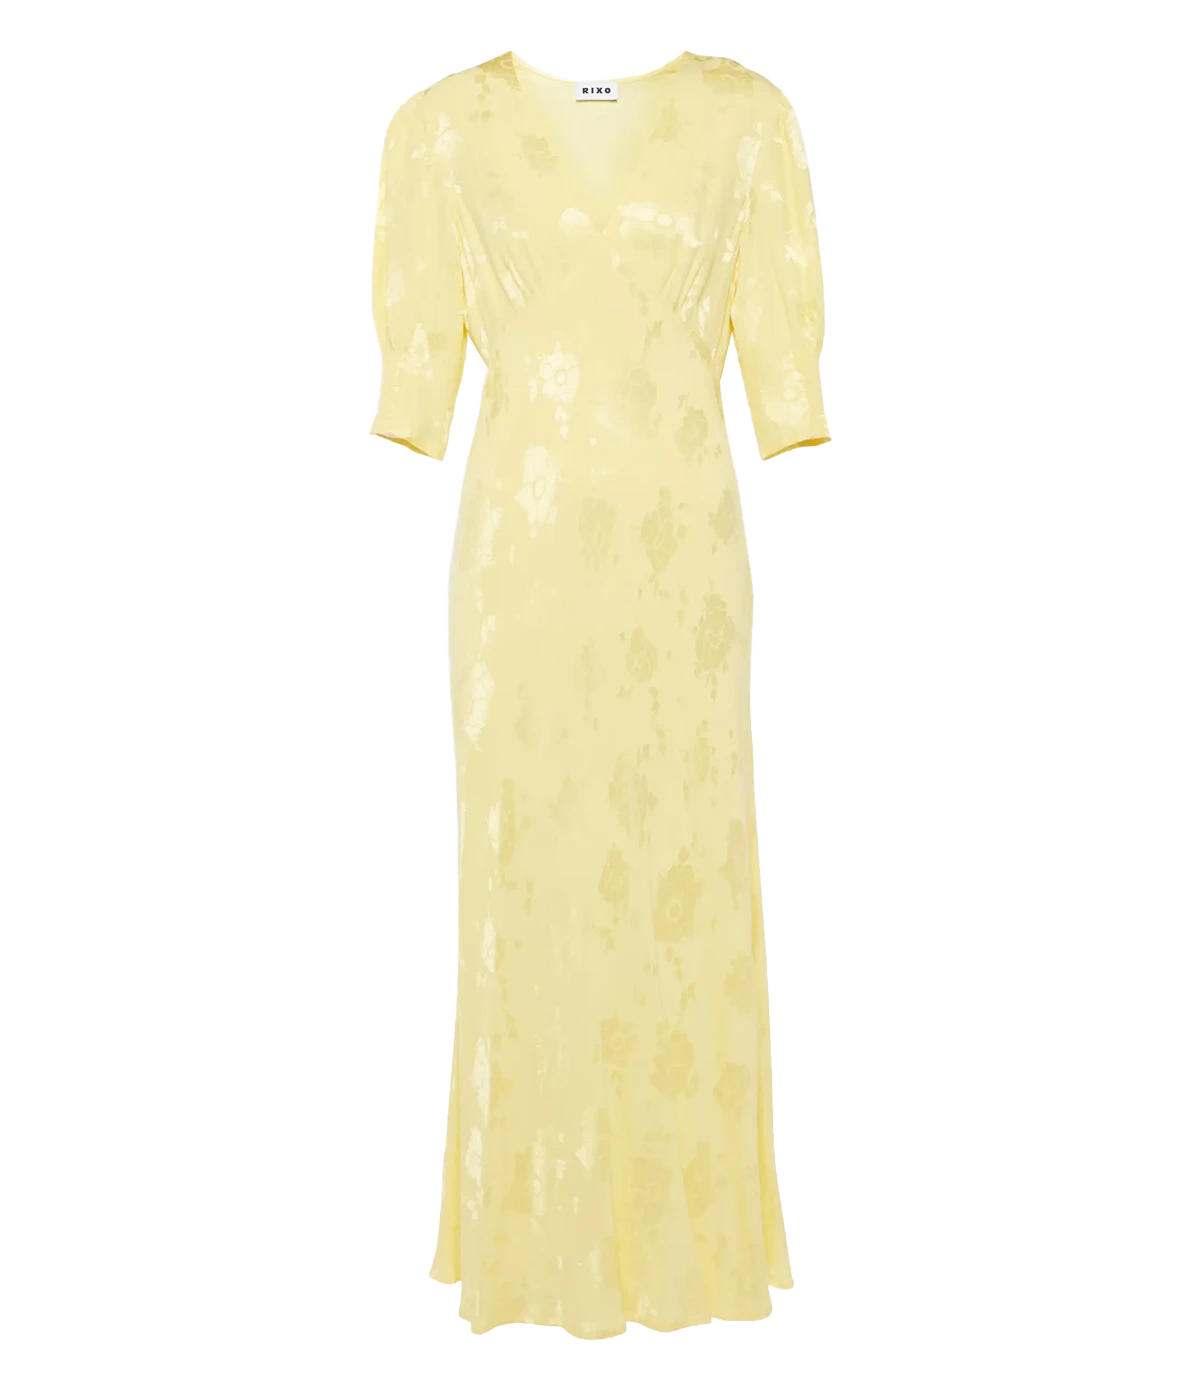 Zadie Dress in Gold Poppy